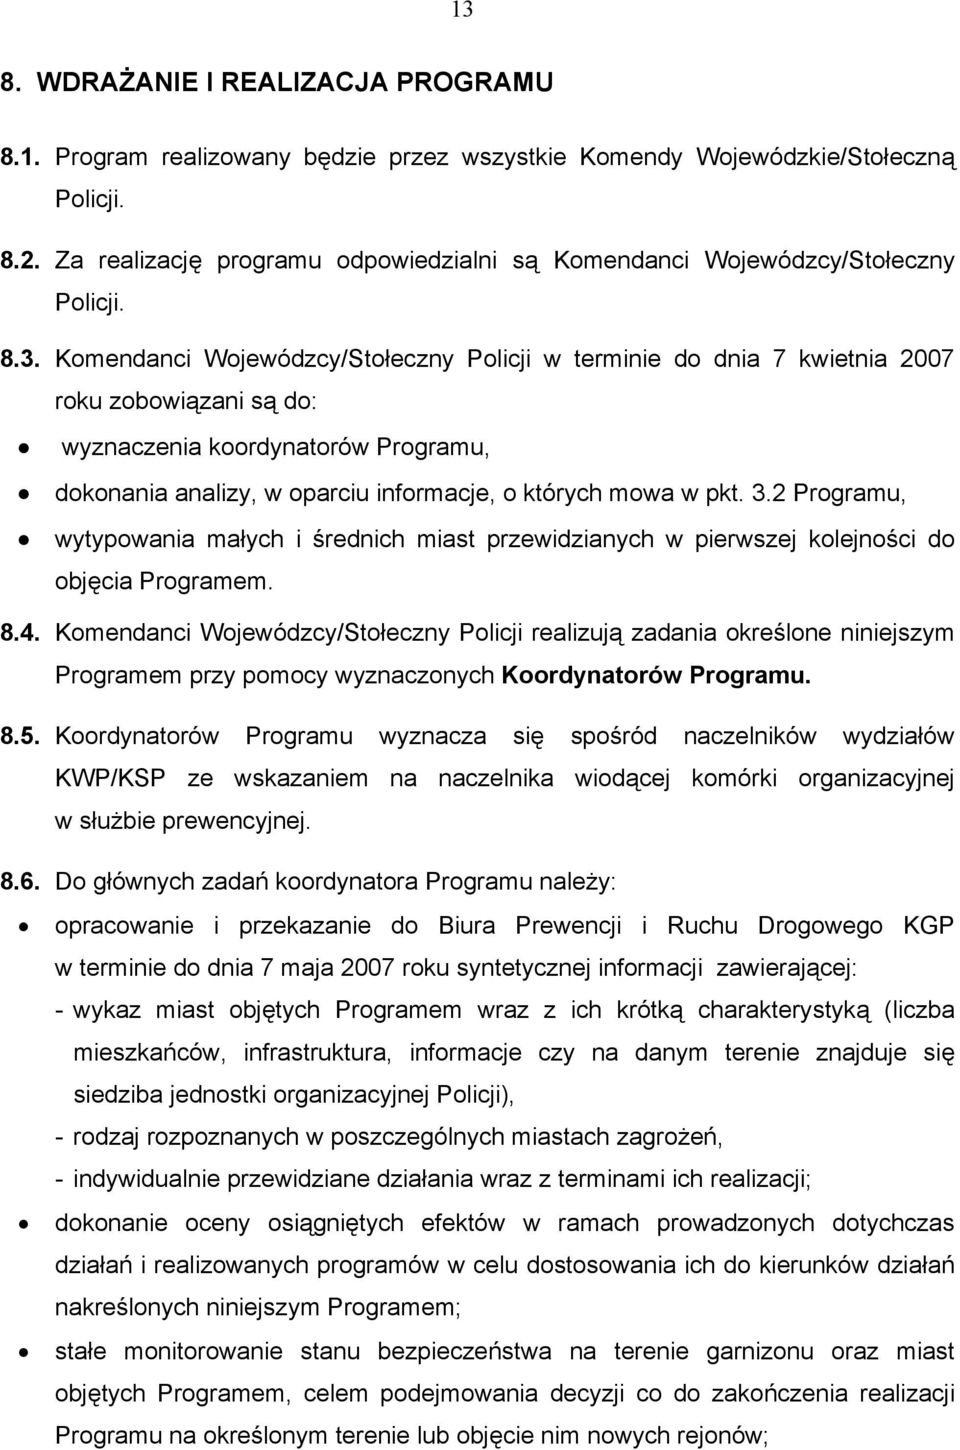 Komendanci Wojewódzcy/Stołeczny Policji w terminie do dnia 7 kwietnia 2007 roku zobowiązani są do: wyznaczenia koordynatorów Programu, dokonania analizy, w oparciu informacje, o których mowa w pkt. 3.